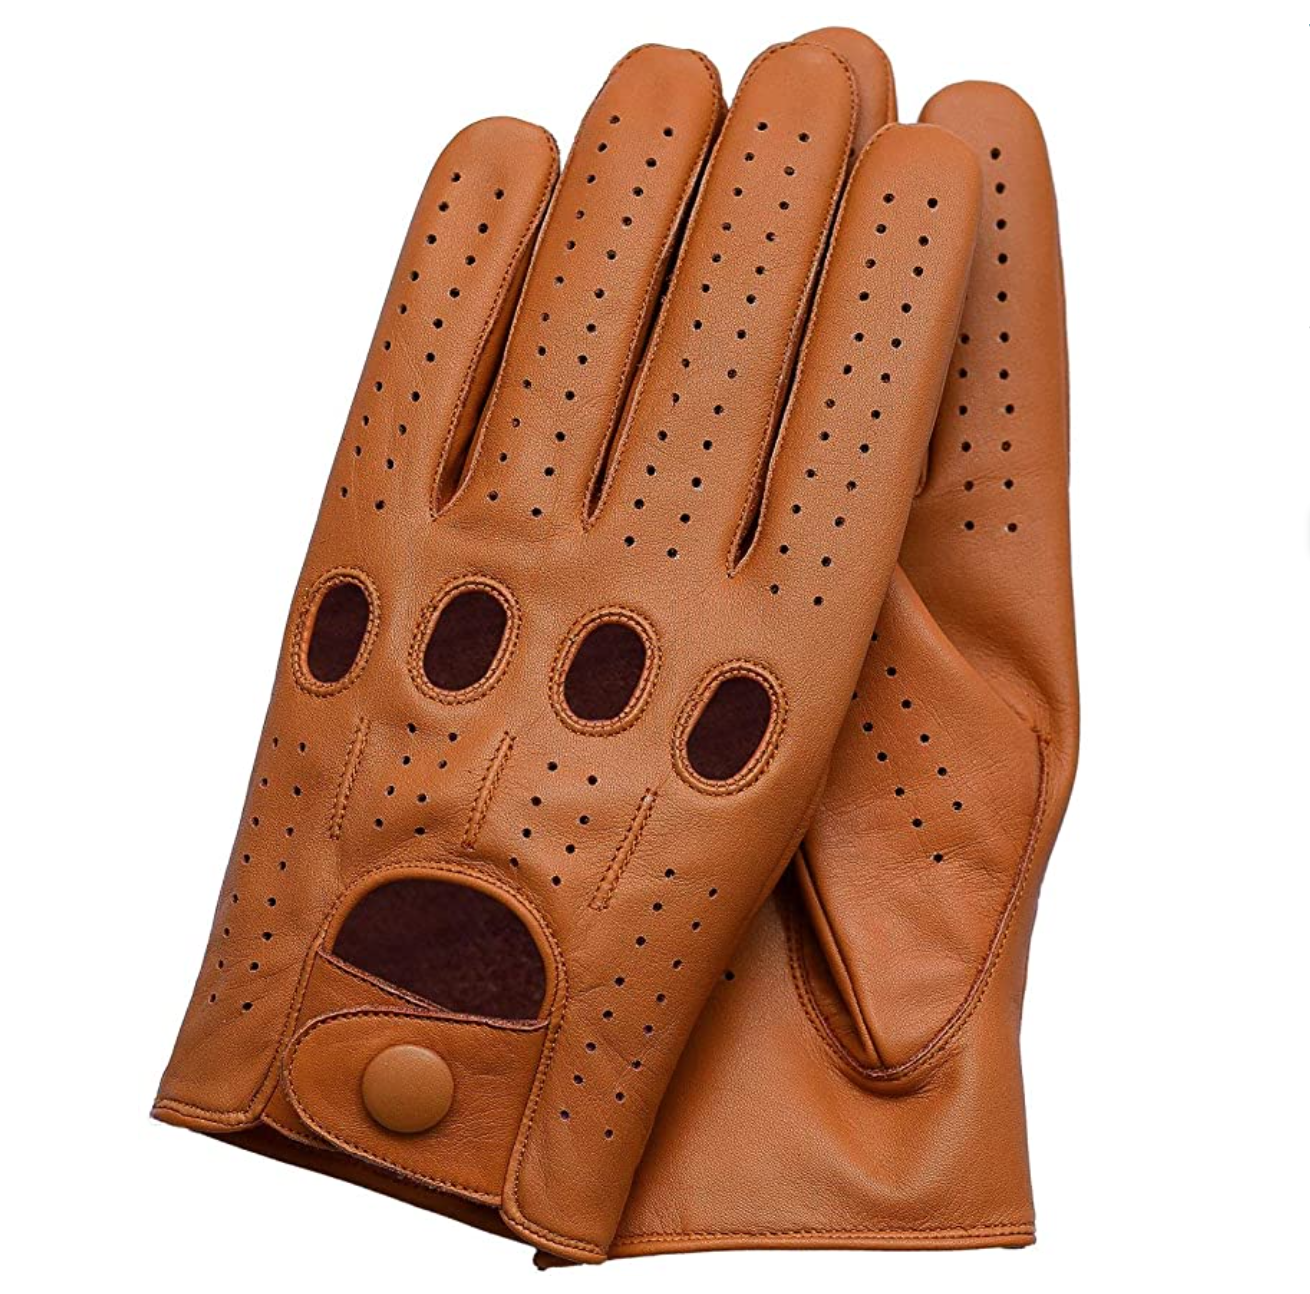 Перчатки автомобильные мужские. Перчатки кожаные Genuine Leather. Genuine Leather HYNB перчатки кожаные мужские. Водительские перчатки. Перчатки для вождения.